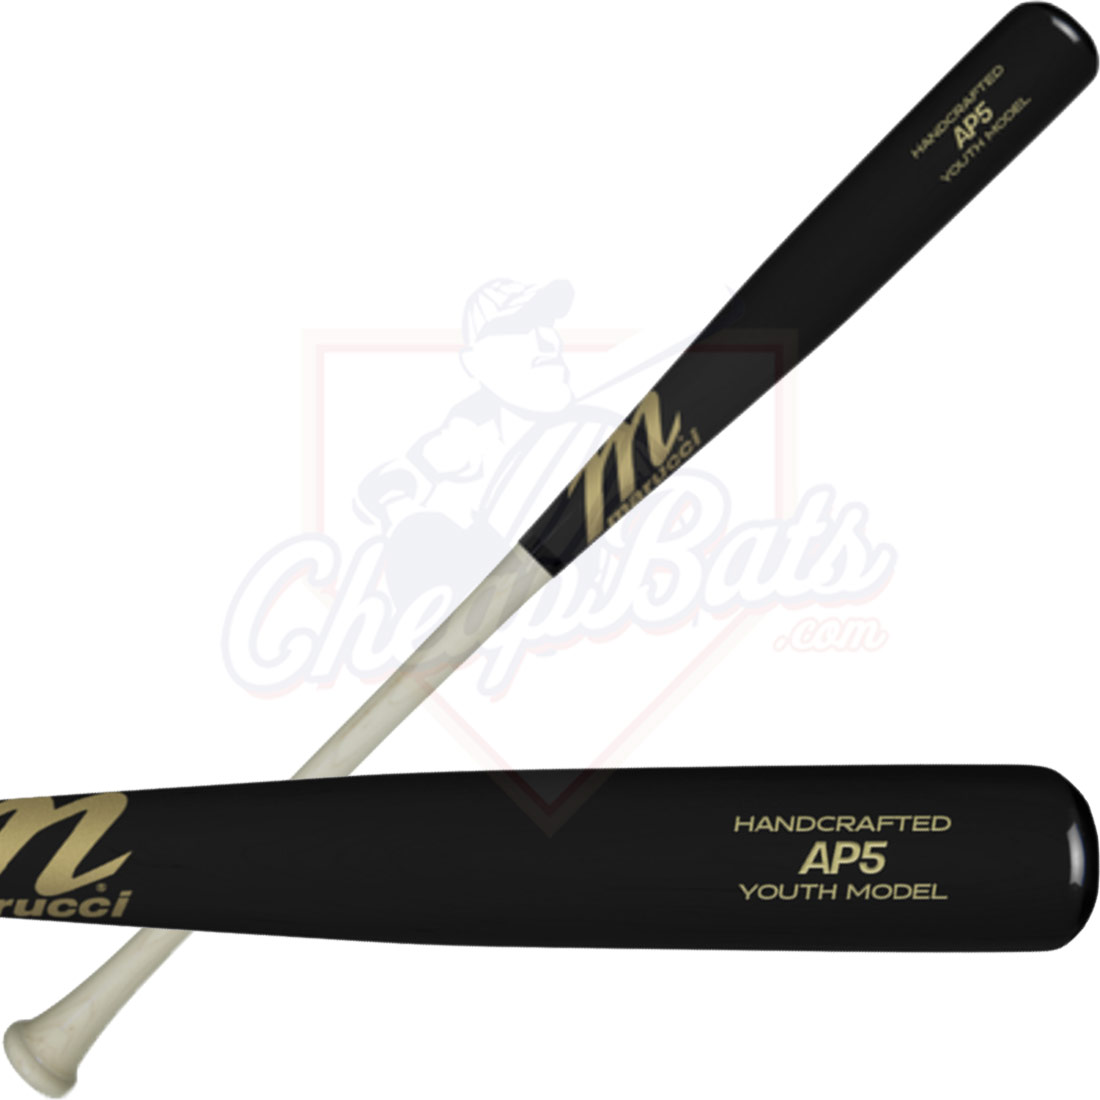 Marucci Albert Pujols 32" Adult Wood Baseball Bat Black/Natural MVEIAP5-BK/N 